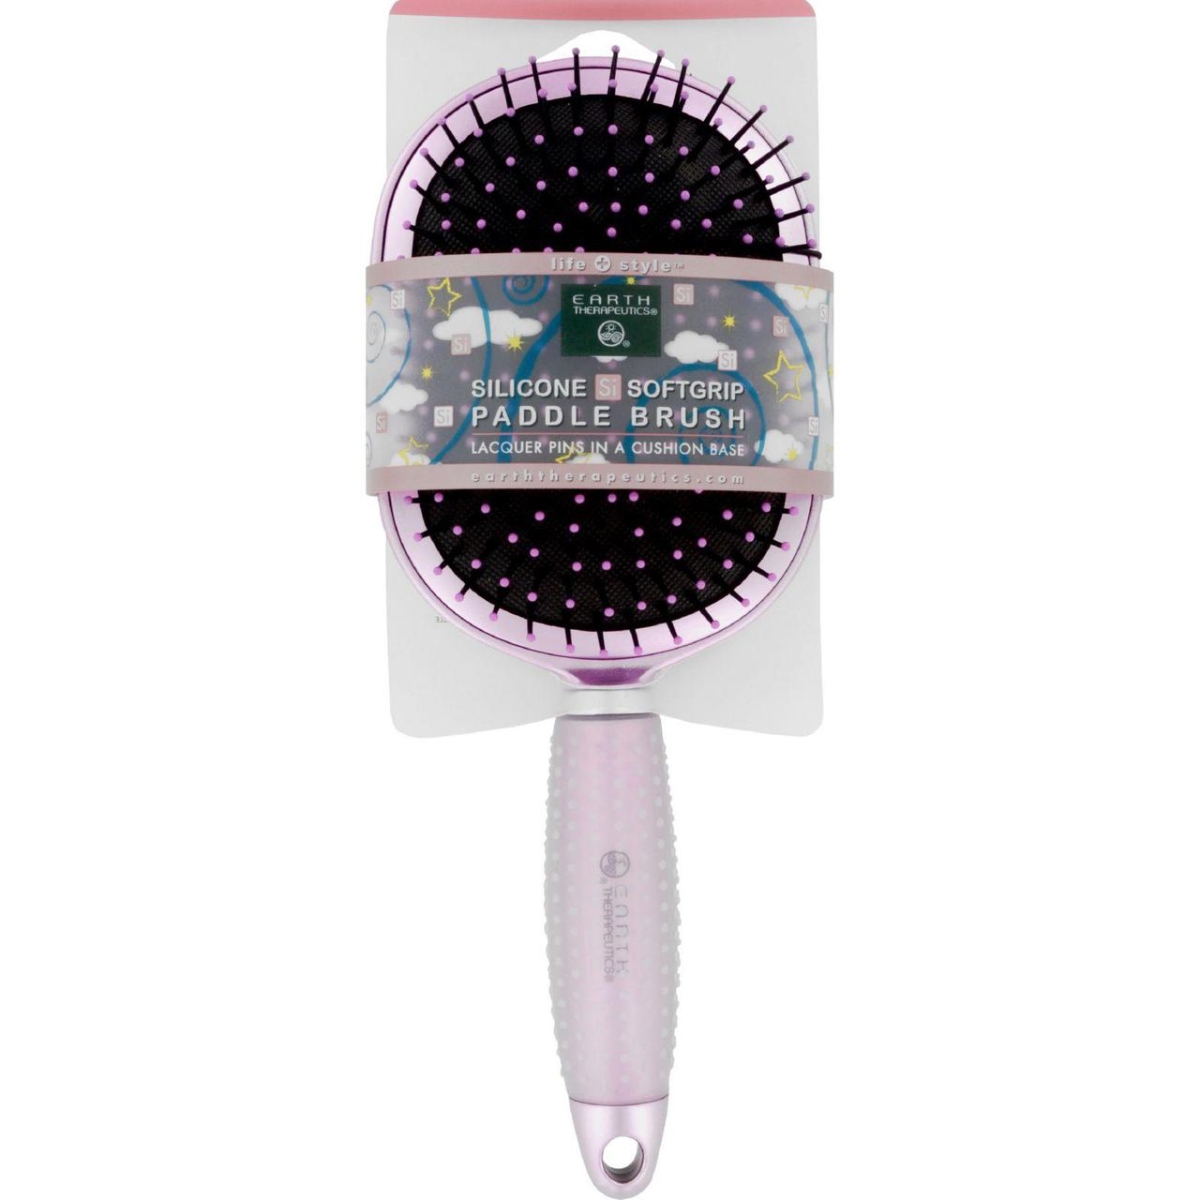 Hg1711175 Silicon Hair Brush - Paddle, Pink